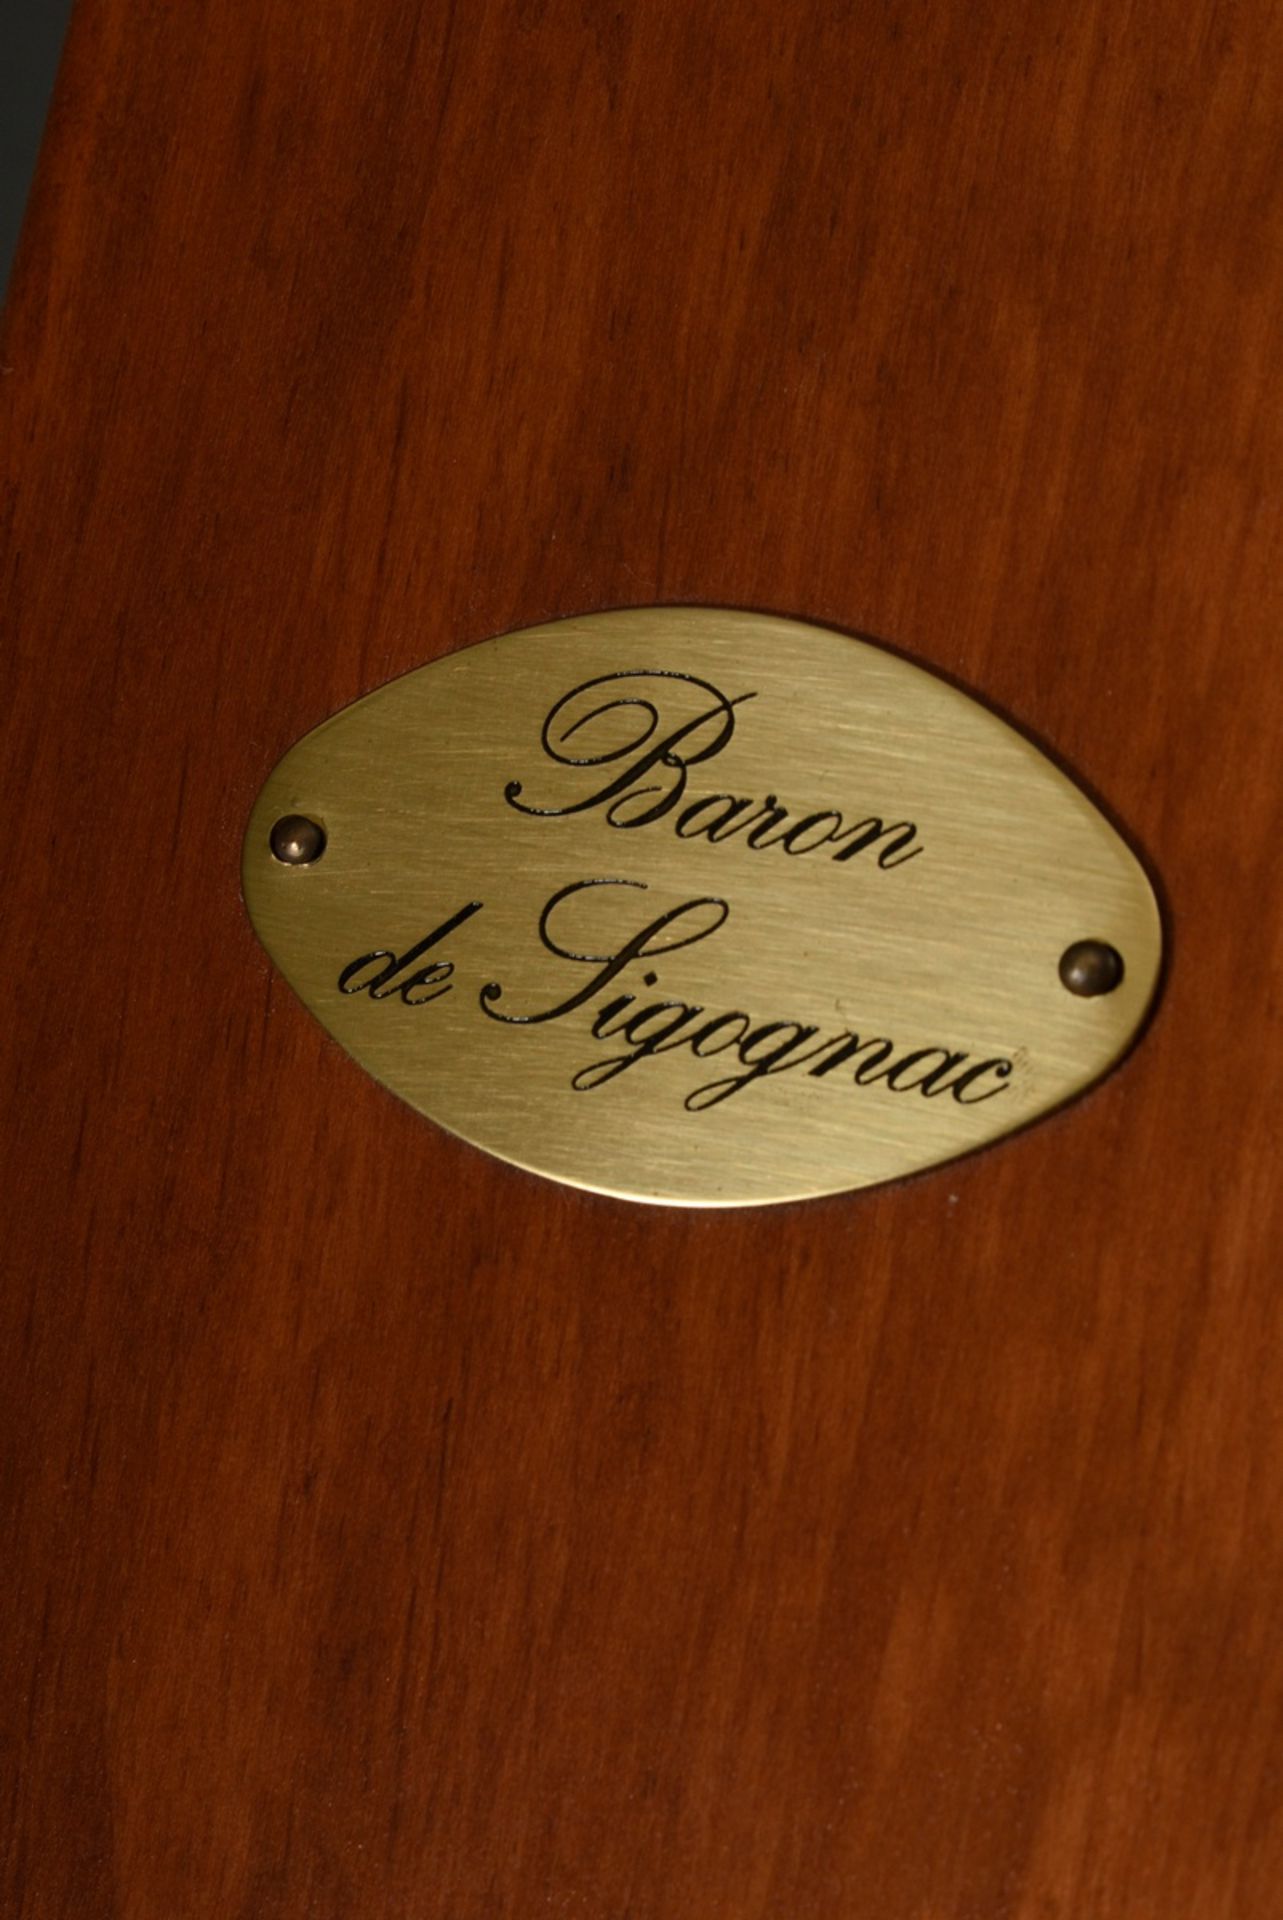 Flasche Armagnac "Baron de Sigognac" 1923, in Original Holzkiste mit Messing Schild, Gers, Frankrei - Bild 7 aus 7